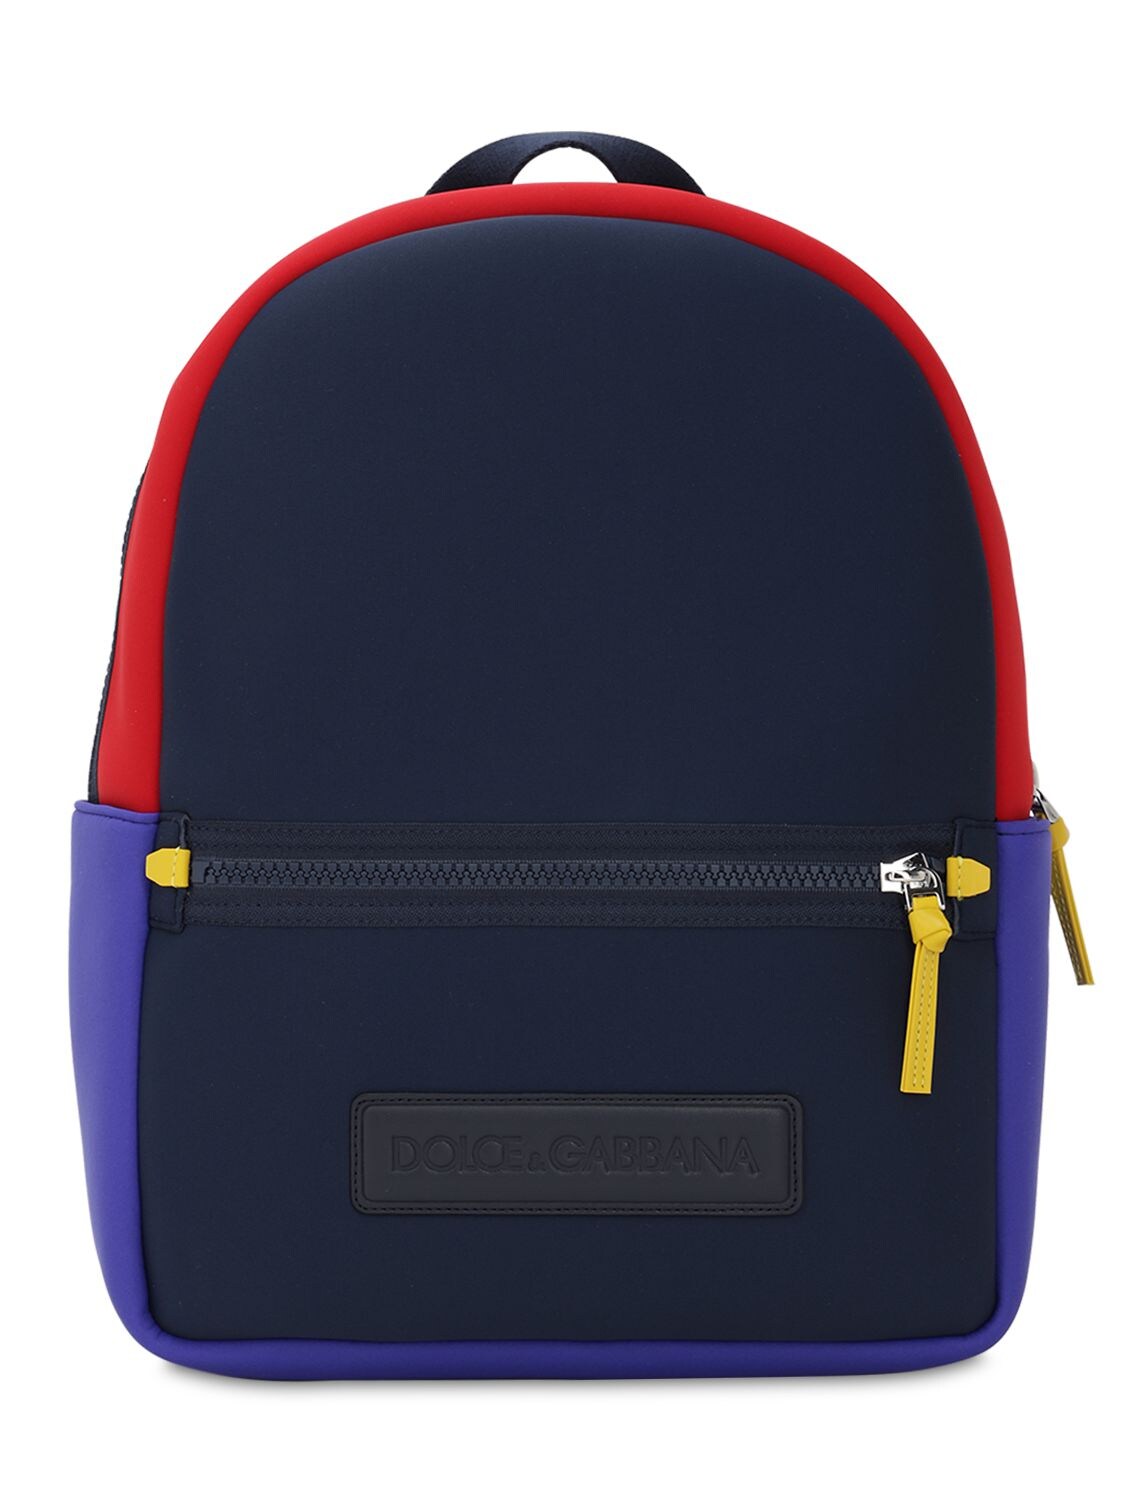 Dolce & Gabbana Kids' Color Block Neoprene Backpack In Multicolor